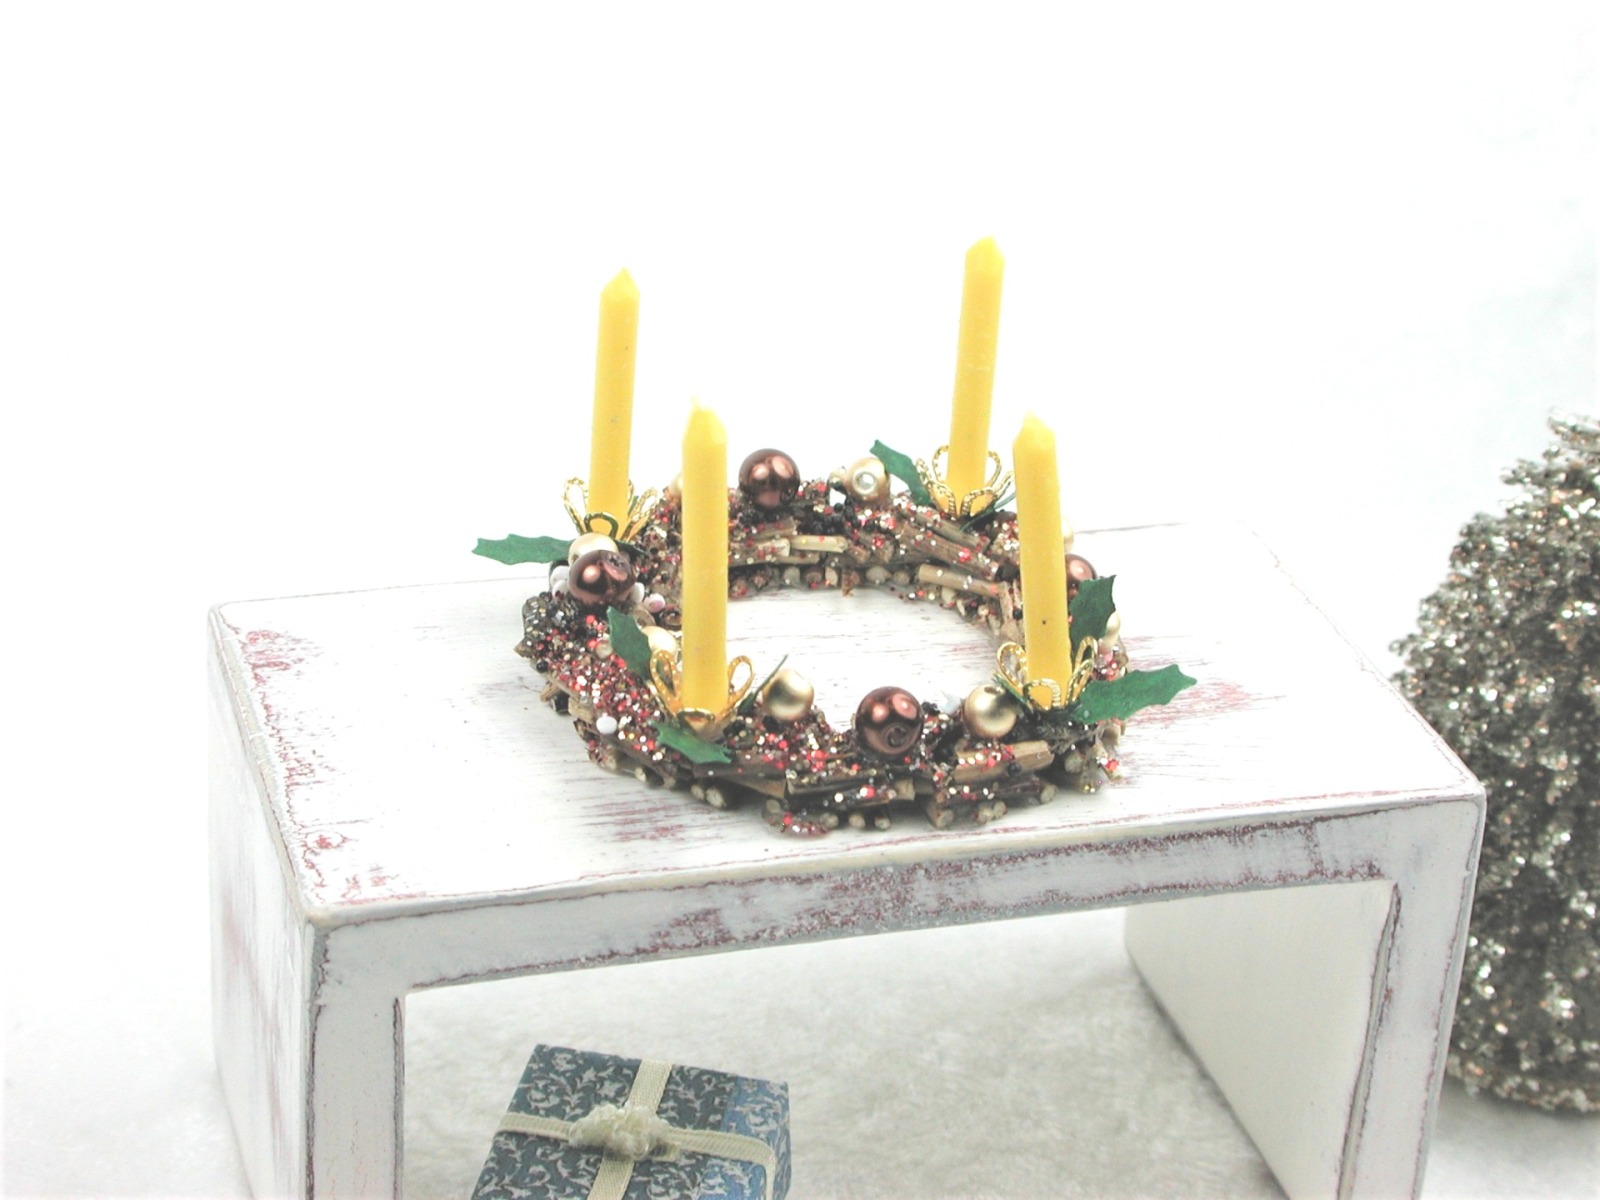 Adventskranz aus Holz mit echten gelben Kerzen im Kerzenhalter und in braun gold gehaltene